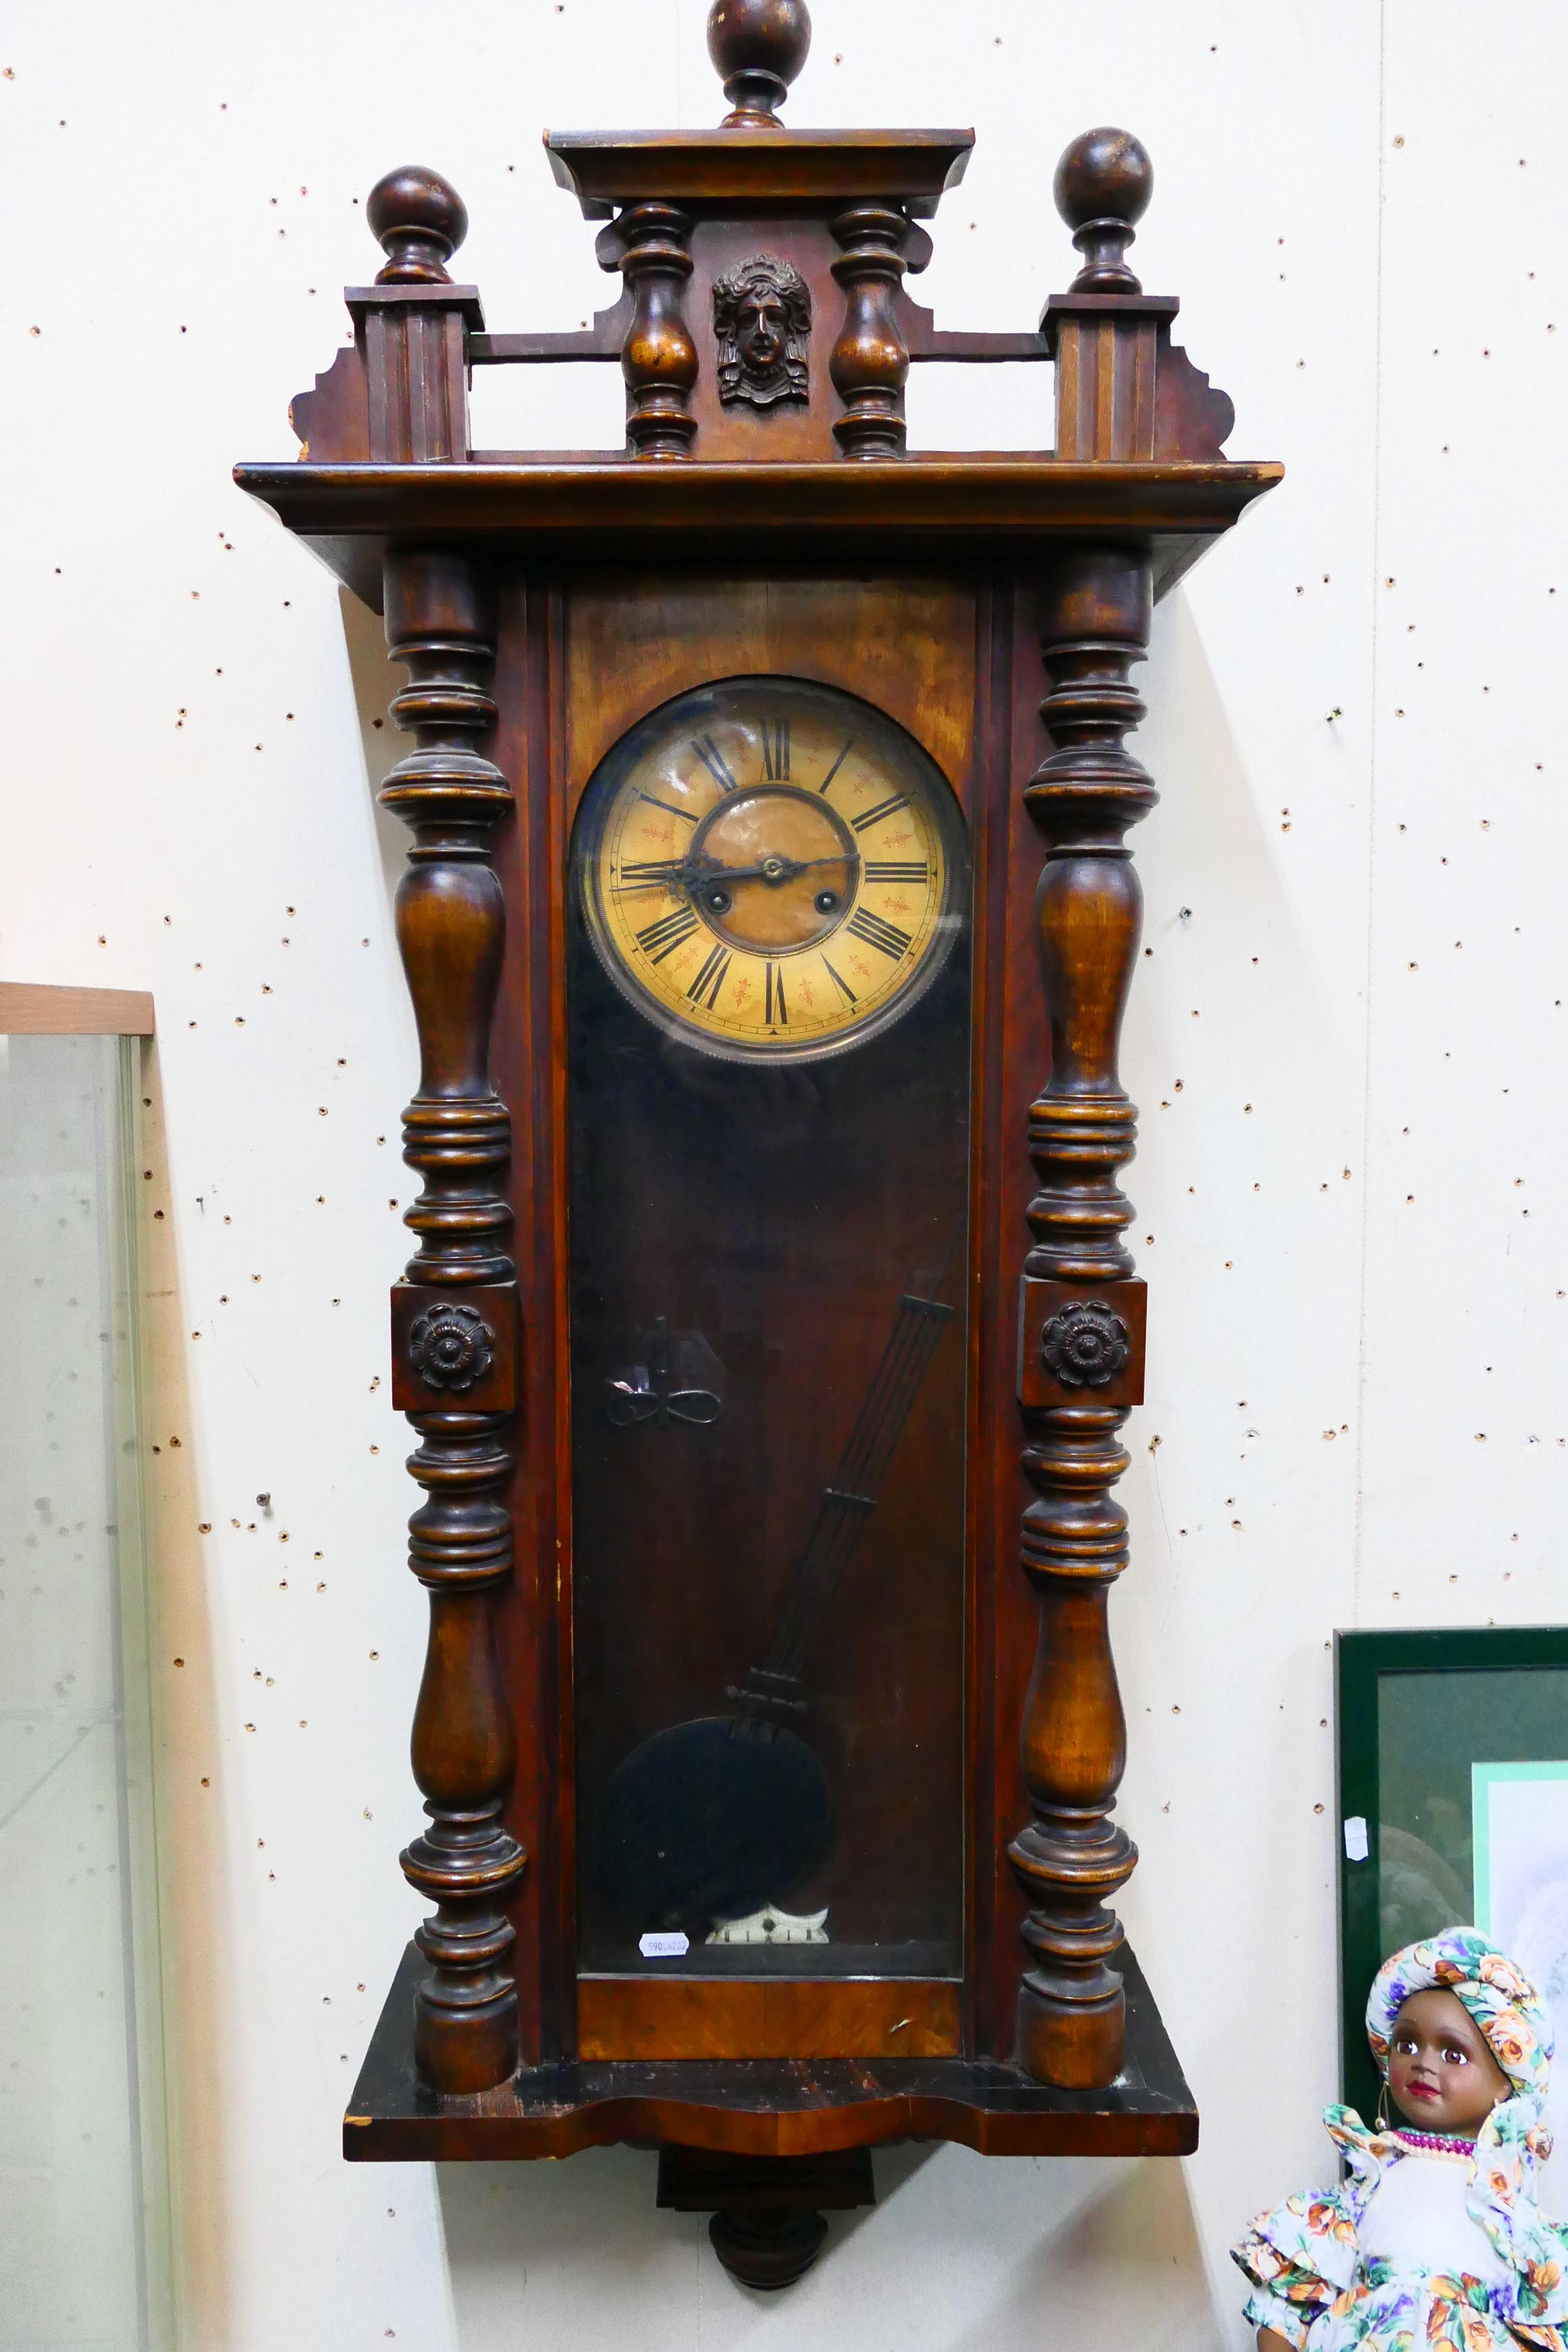 A Vienna-style wall clock. 124 cm (h) x 43 cm (w) x 20 cm (d), with key and pendulum.